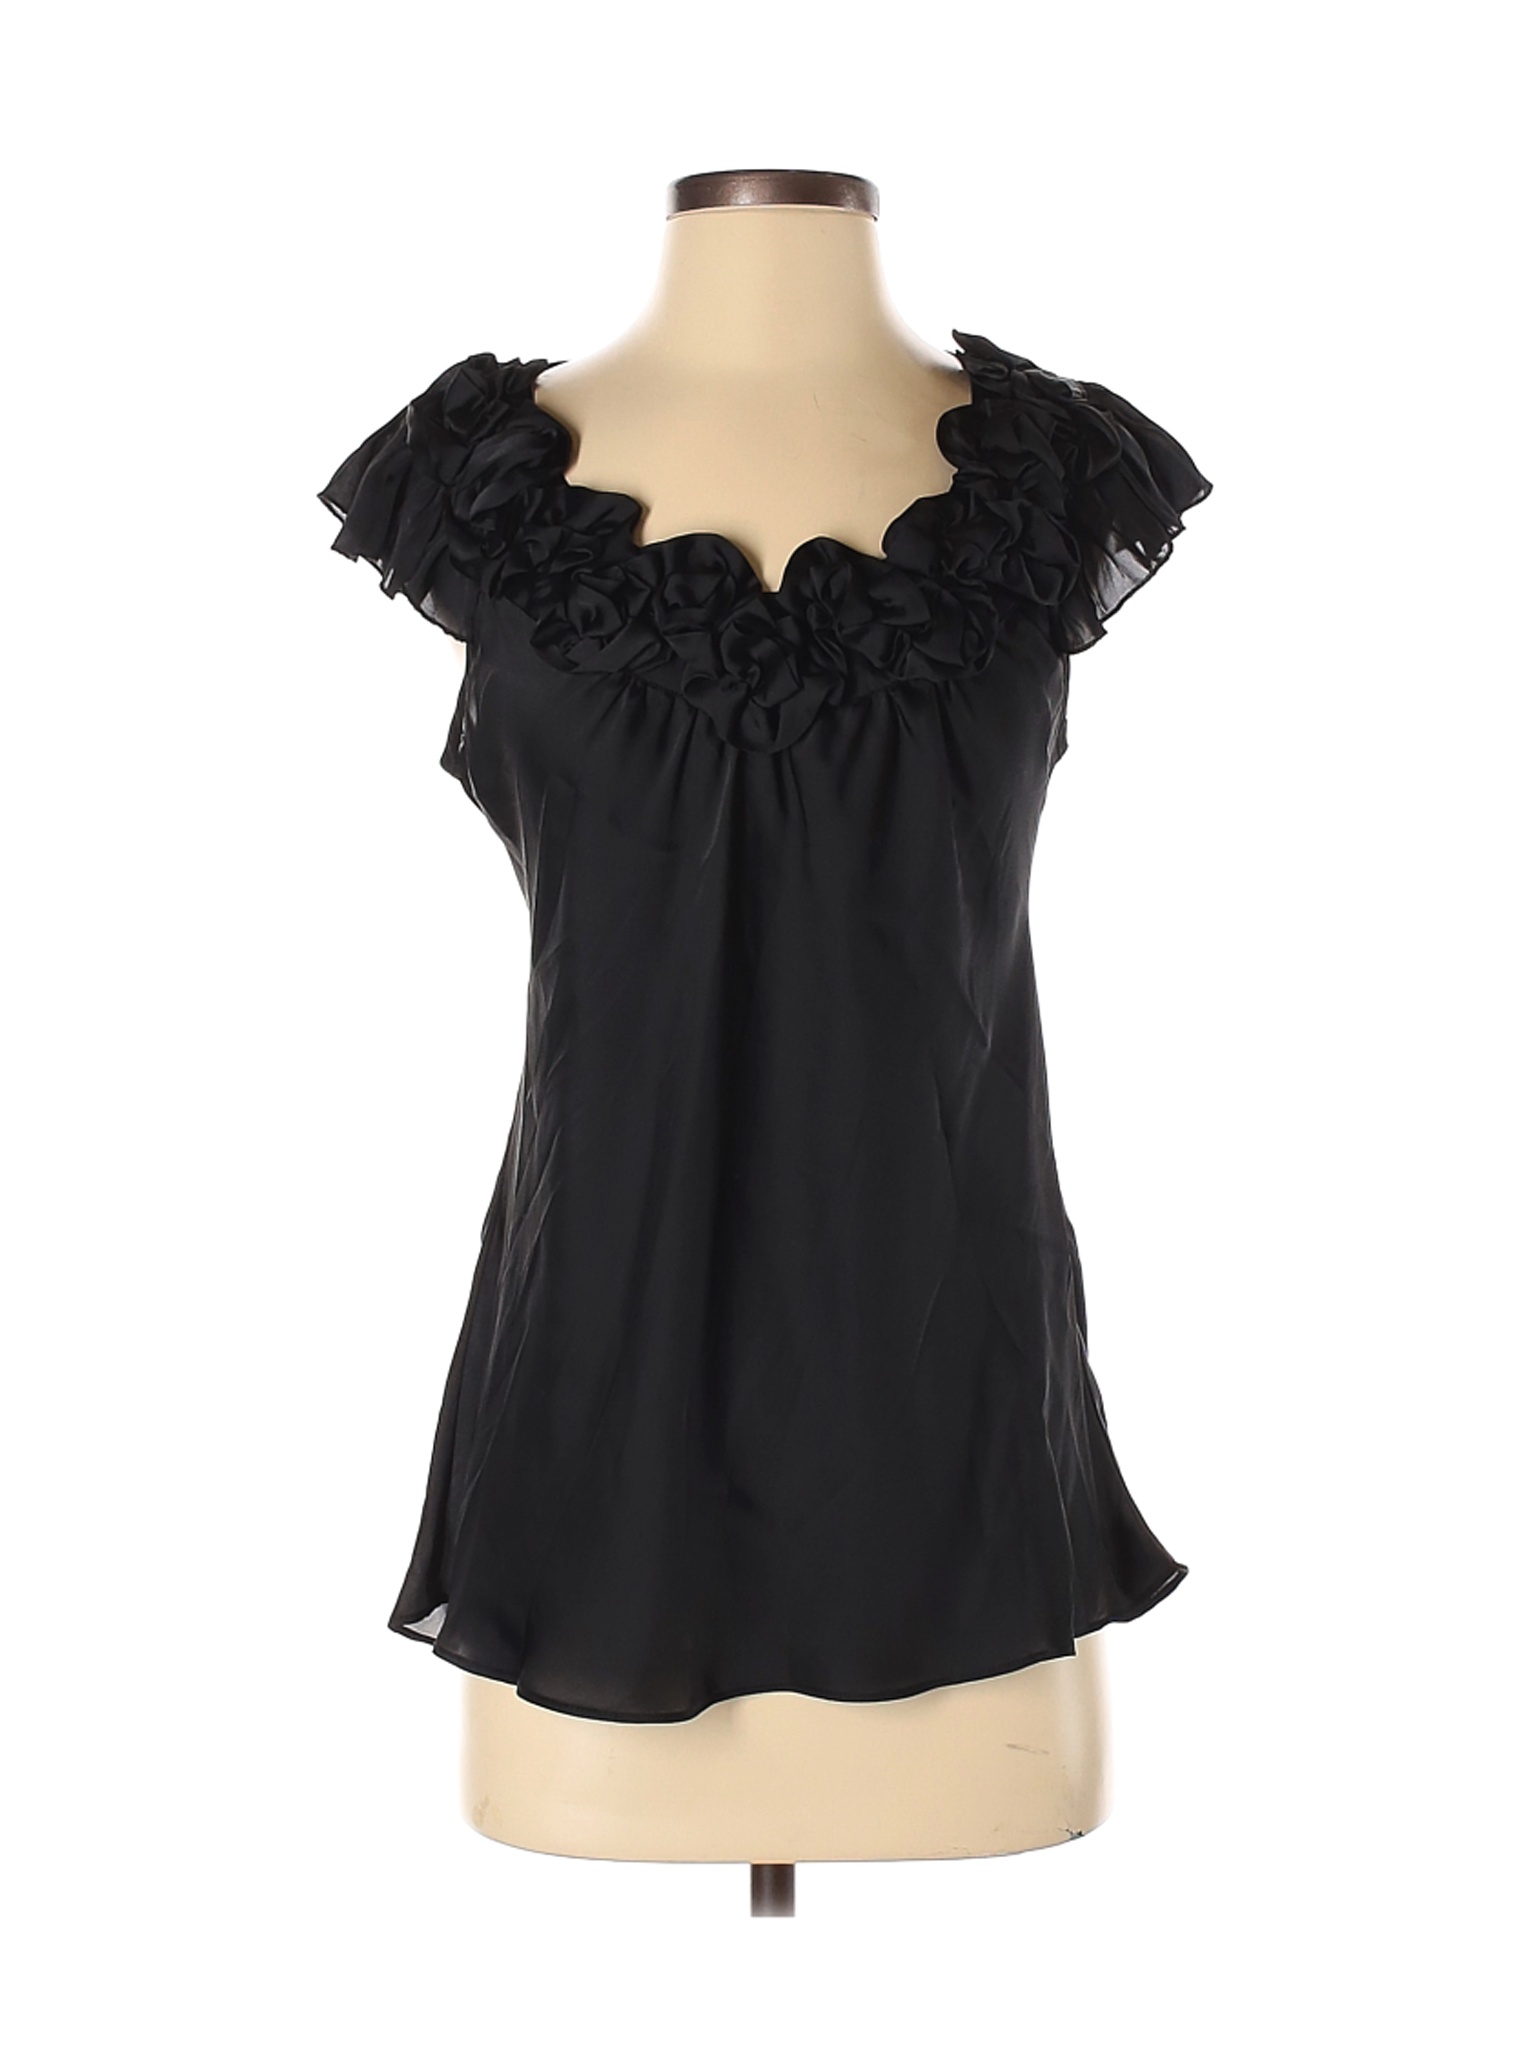 Spense Women Black Short Sleeve Blouse S | eBay